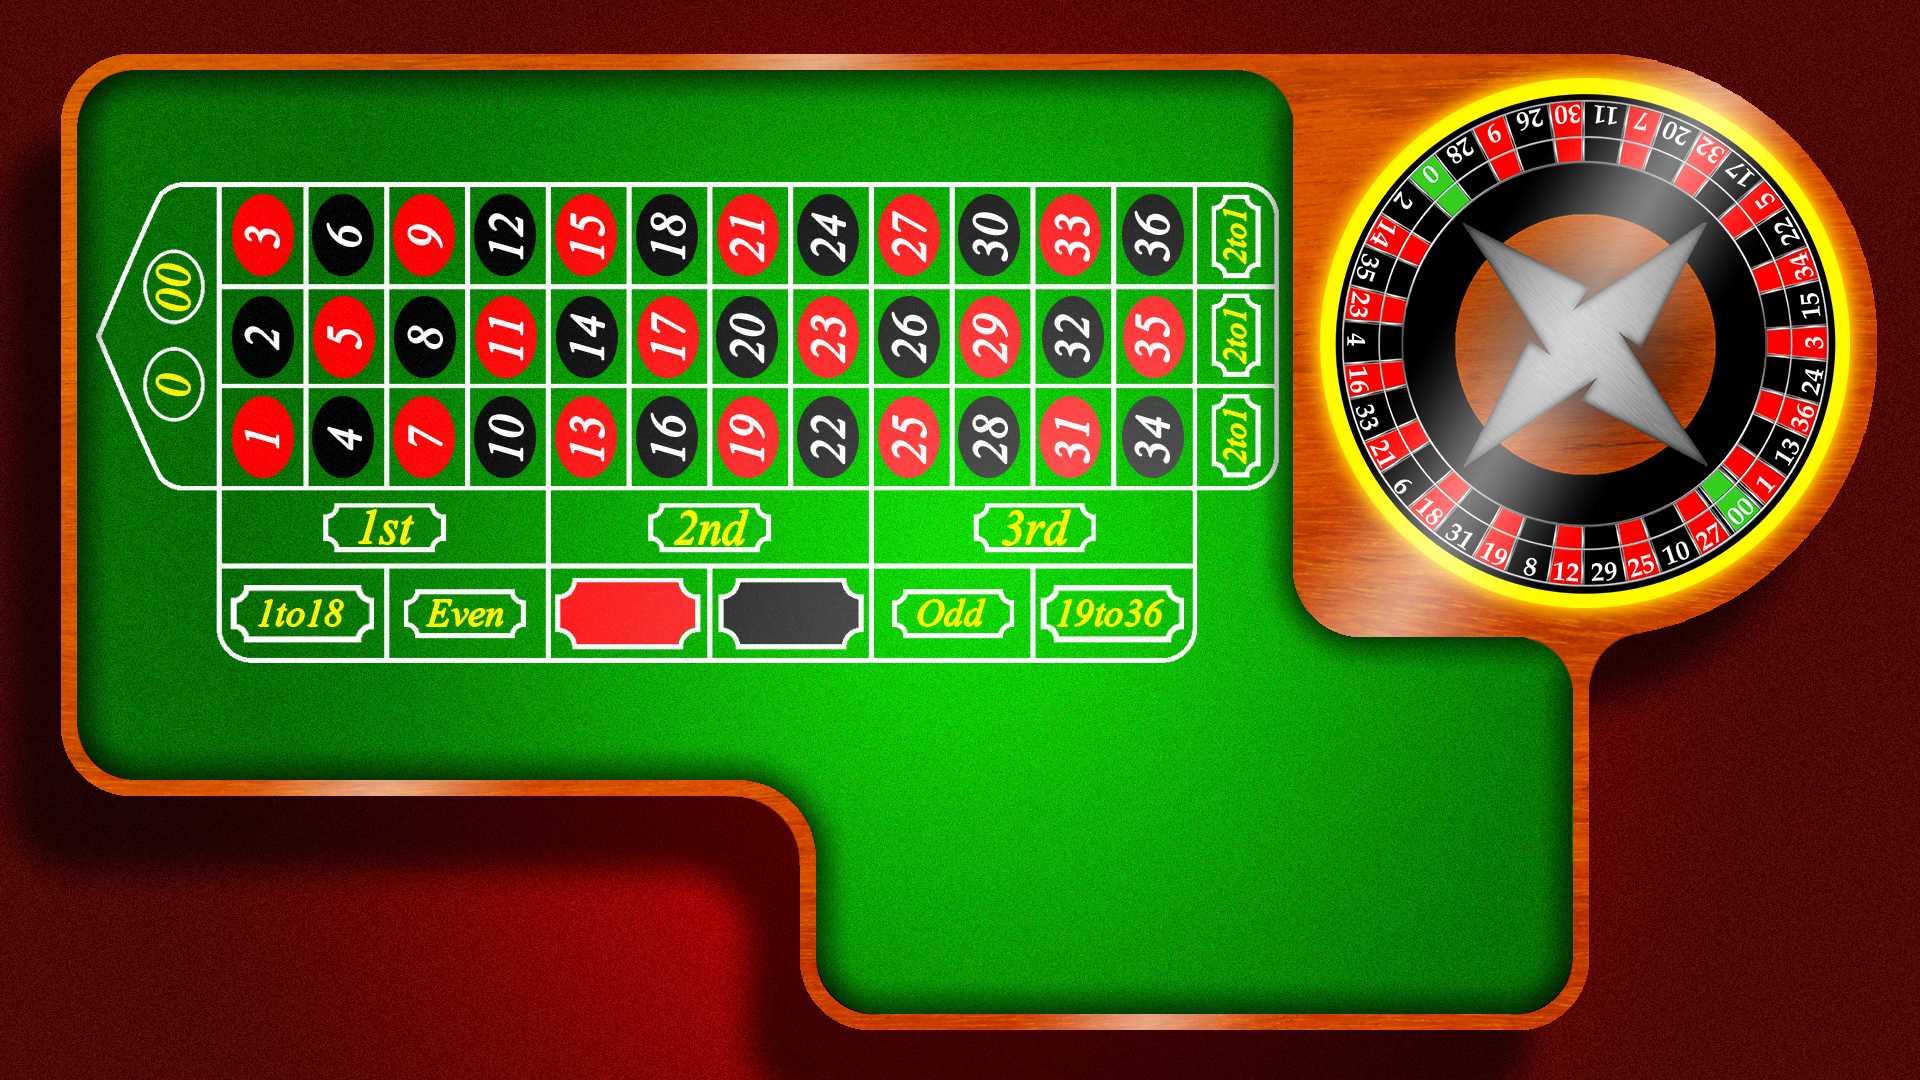 Стол рулетка казино бесплатно смотреть онлайн короли рулетки